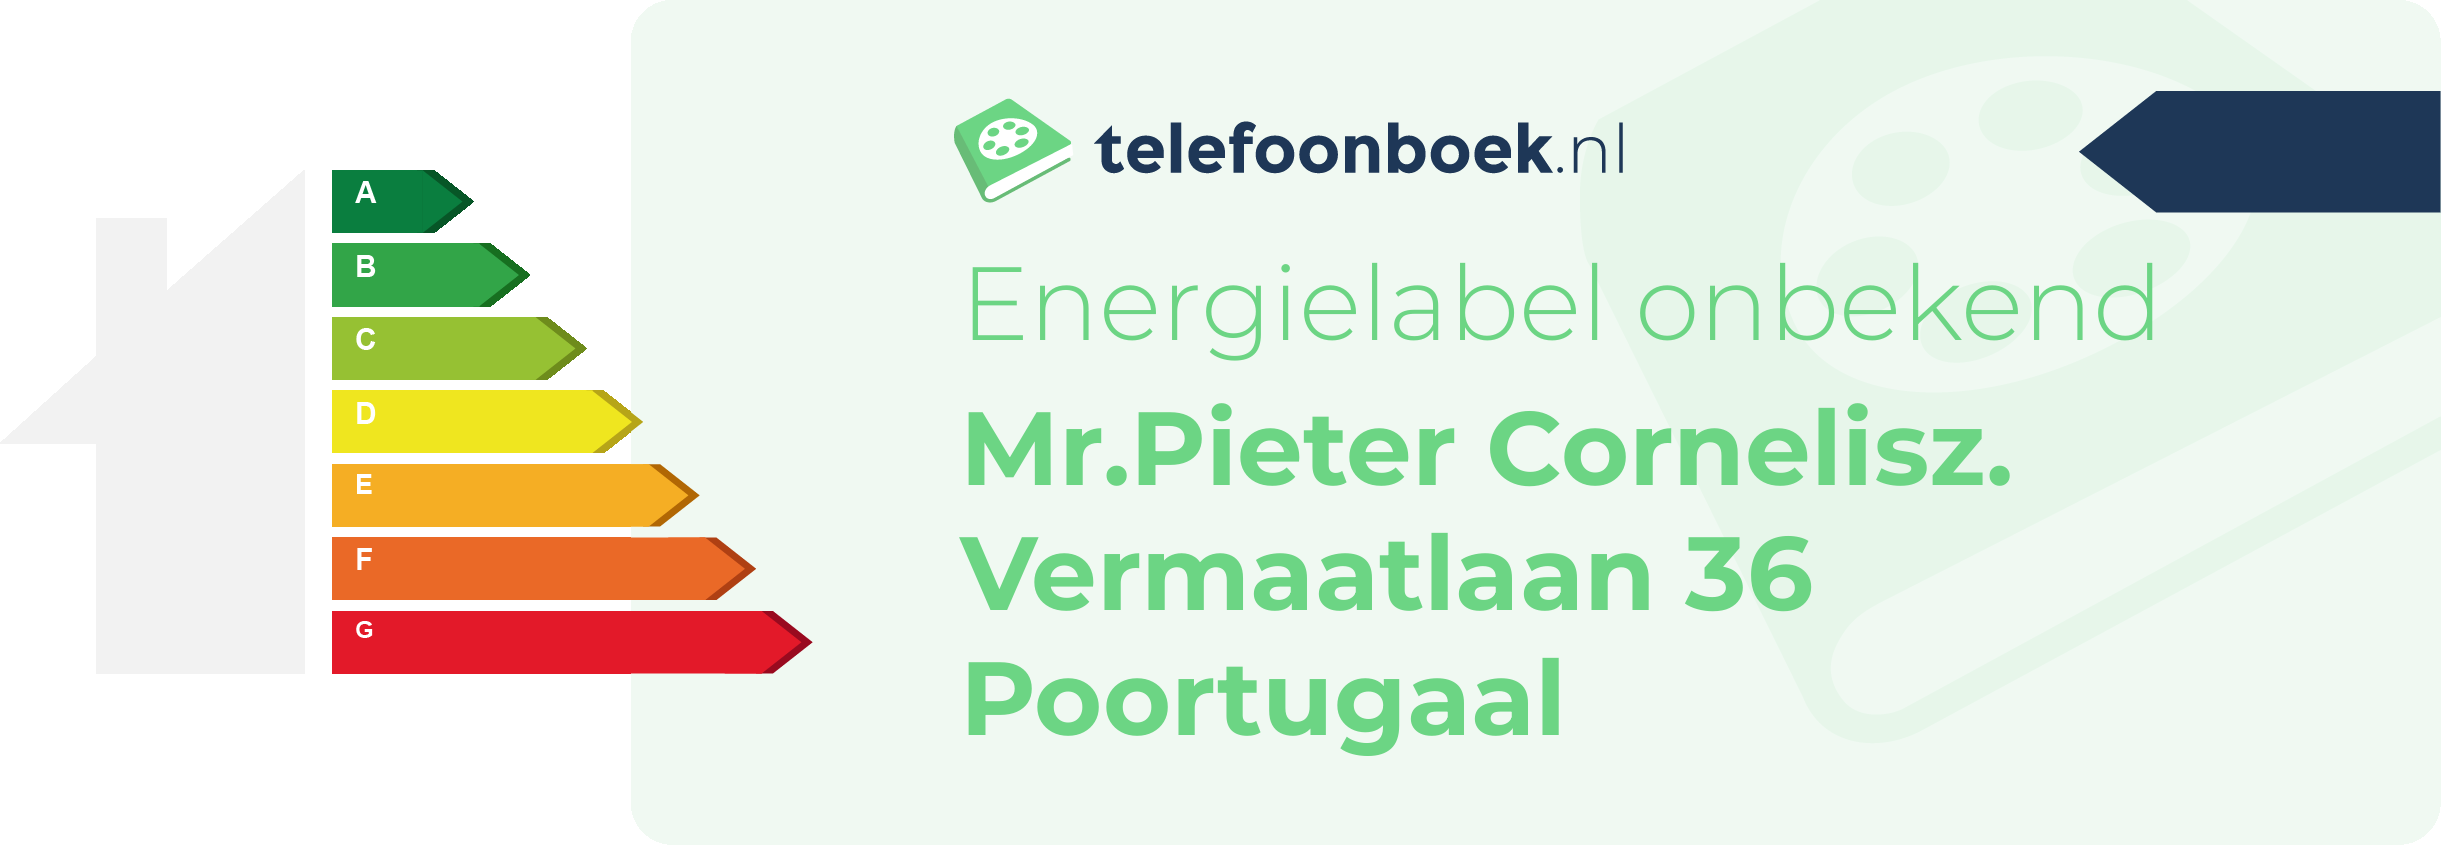 Energielabel Mr.Pieter Cornelisz. Vermaatlaan 36 Poortugaal